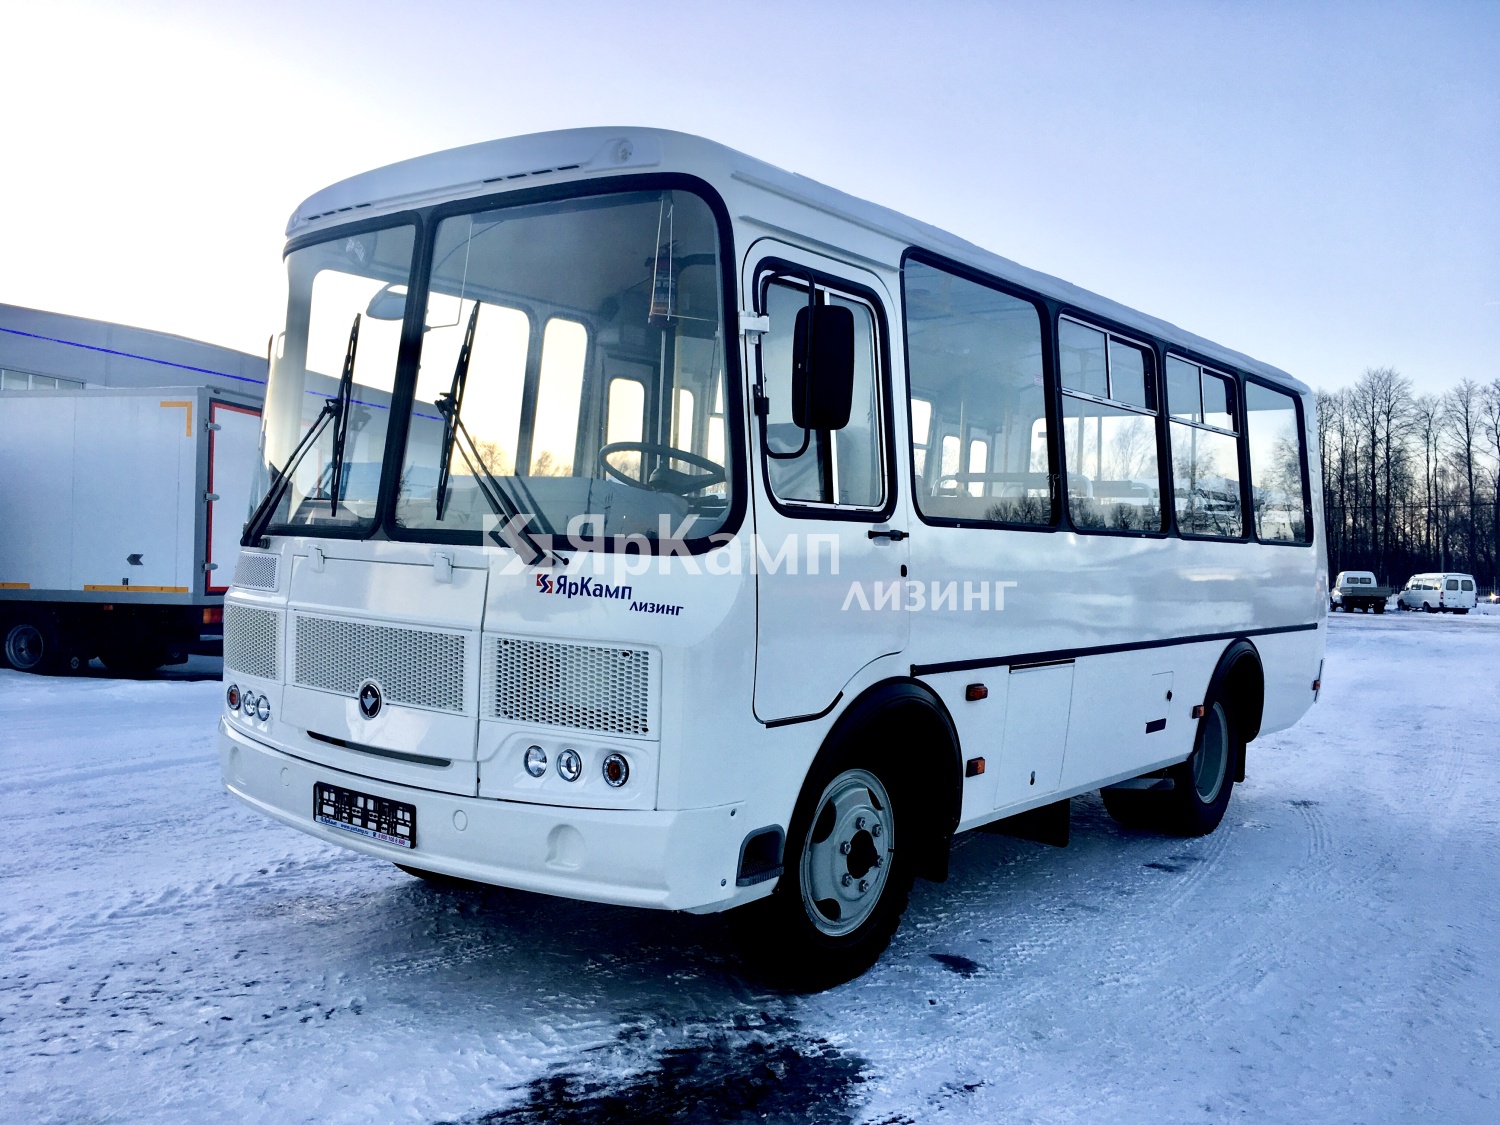 "ЯрКамп-Лизинг" осуществил отгрузку автобуса ПАЗ 32054 в лизинг